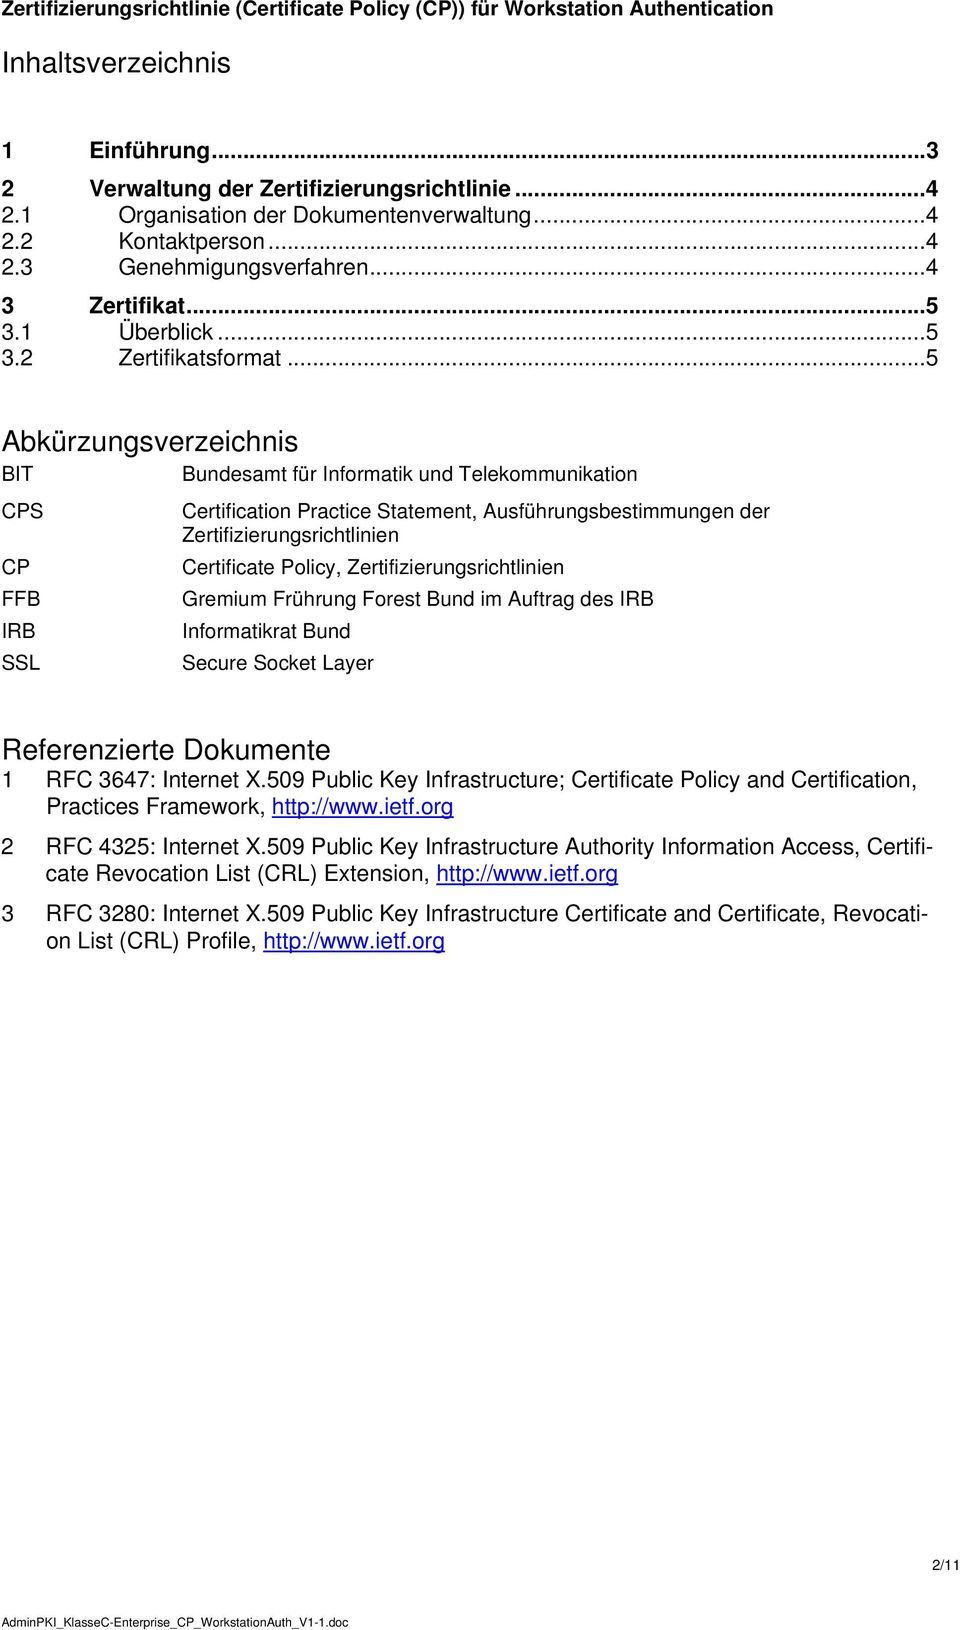 ..5 Abkürzungsverzeichnis BIT Bundesamt für Informatik und Telekommunikation CPS CP FFB IRB SSL Certification Practice Statement, Ausführungsbestimmungen der Zertifizierungsrichtlinien Certificate